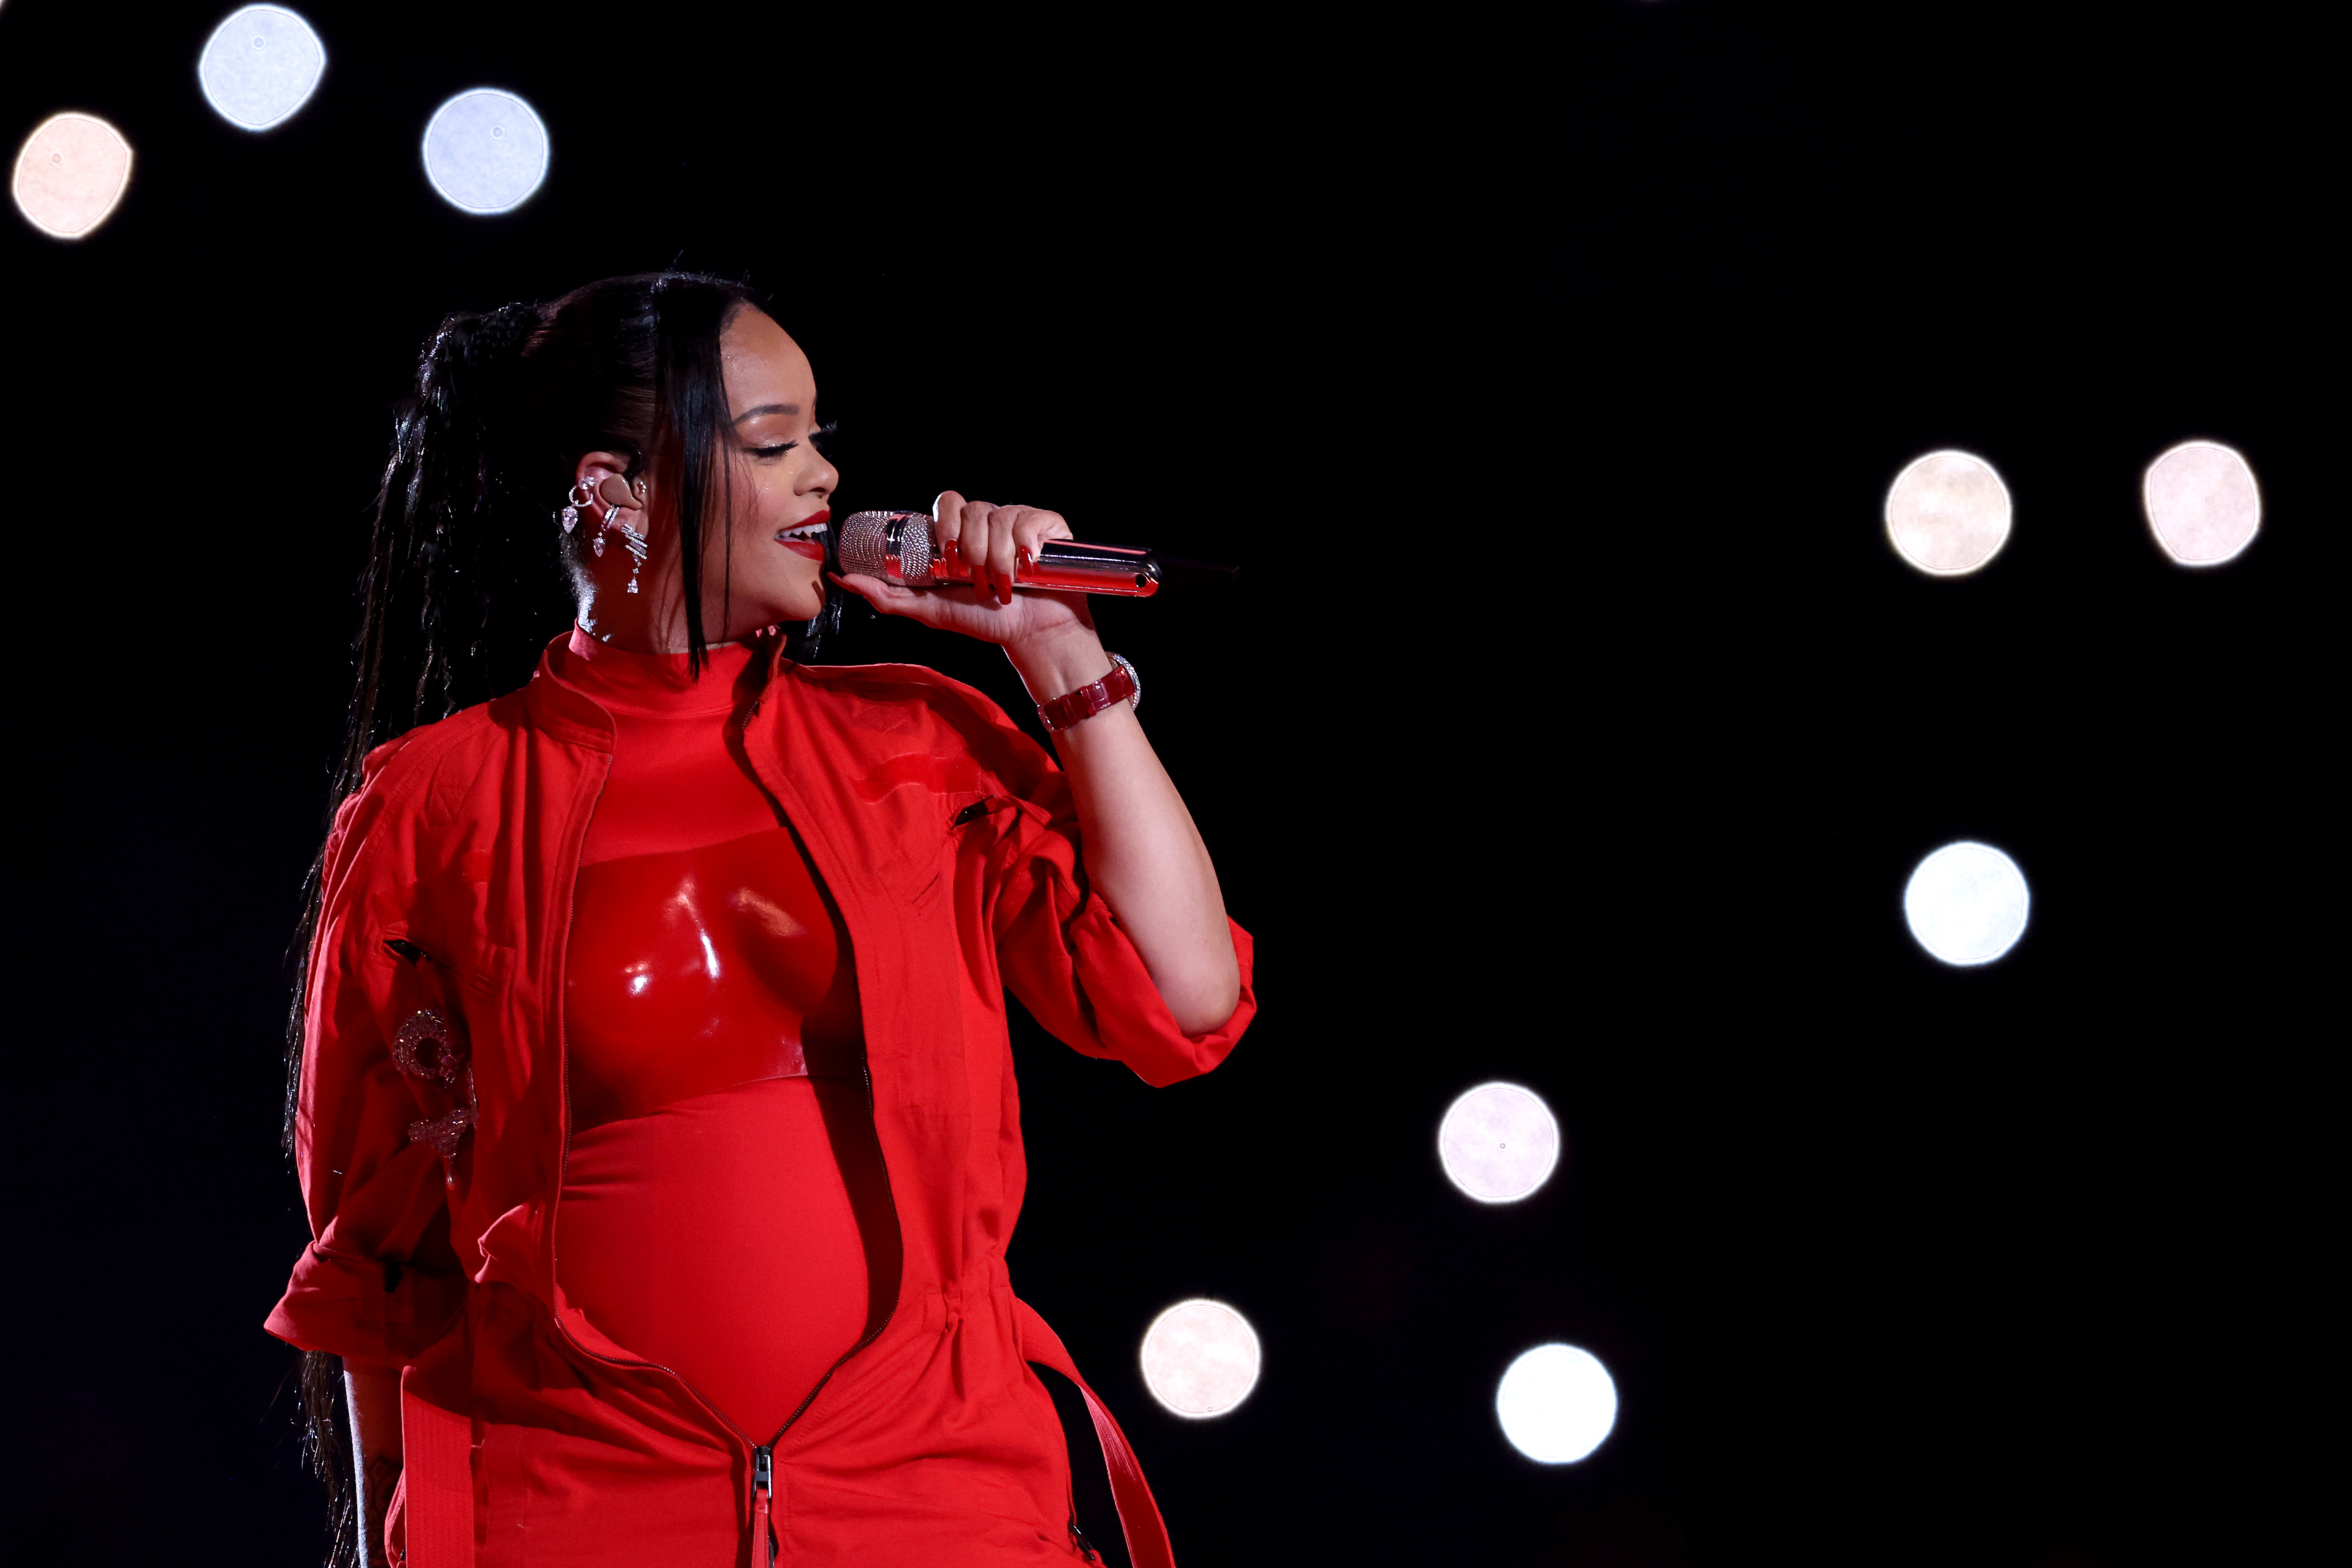 Rihanna gab während ihres NFL-Super-Bowl-Auftritts im Februar bekannt, dass sie ein zweites Kind erwartet